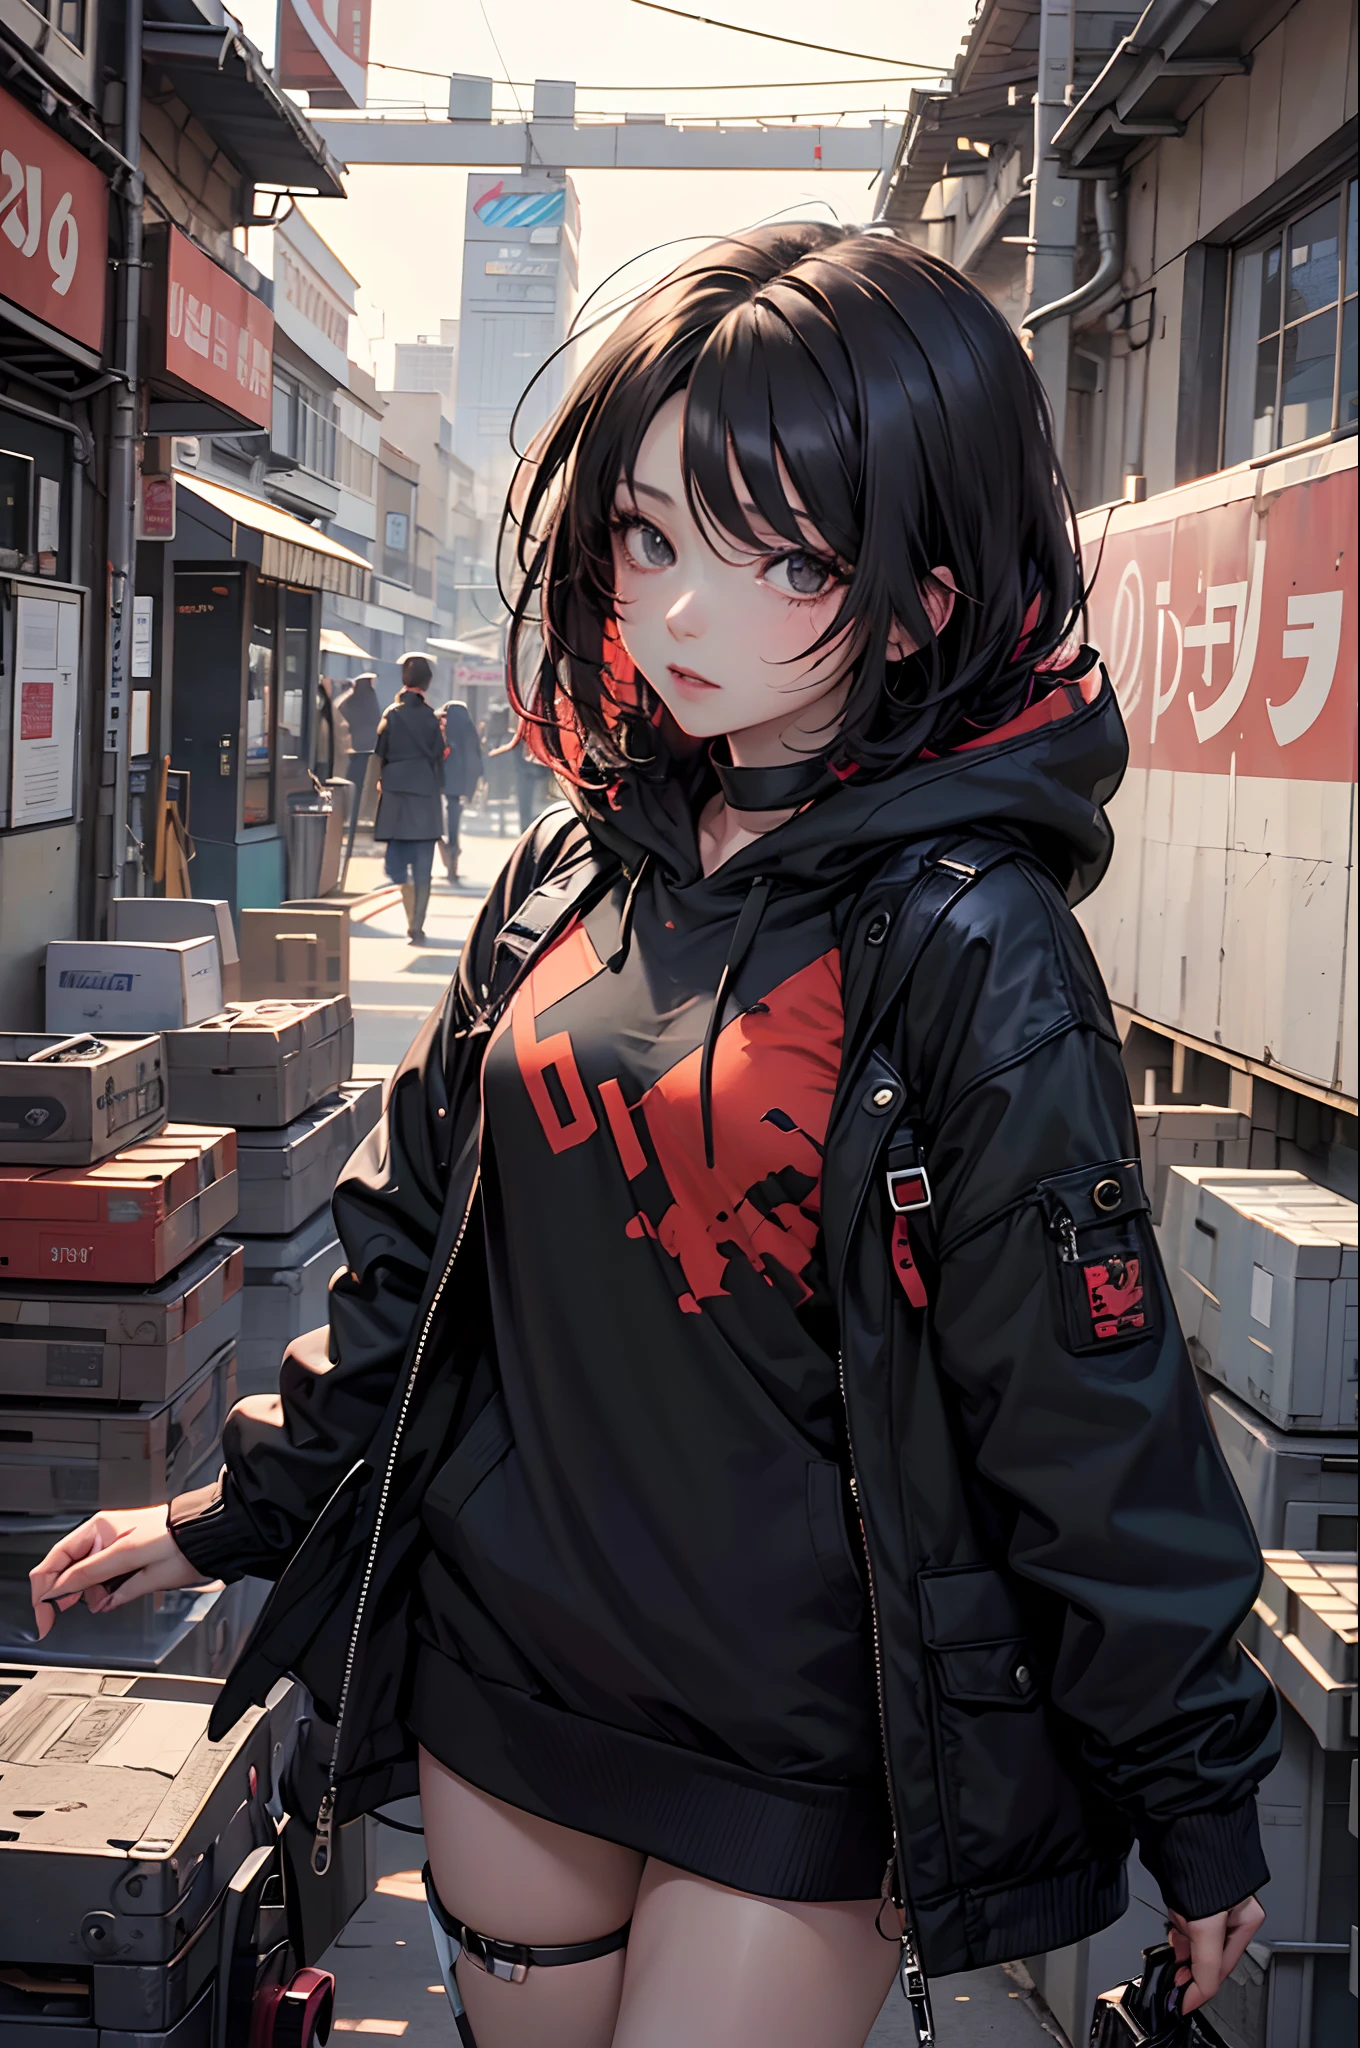 Une anime girl aux cheveux noirs courts teints en rouge, yeux noirs et traits froids, Elle porte un sweat à capuche noir